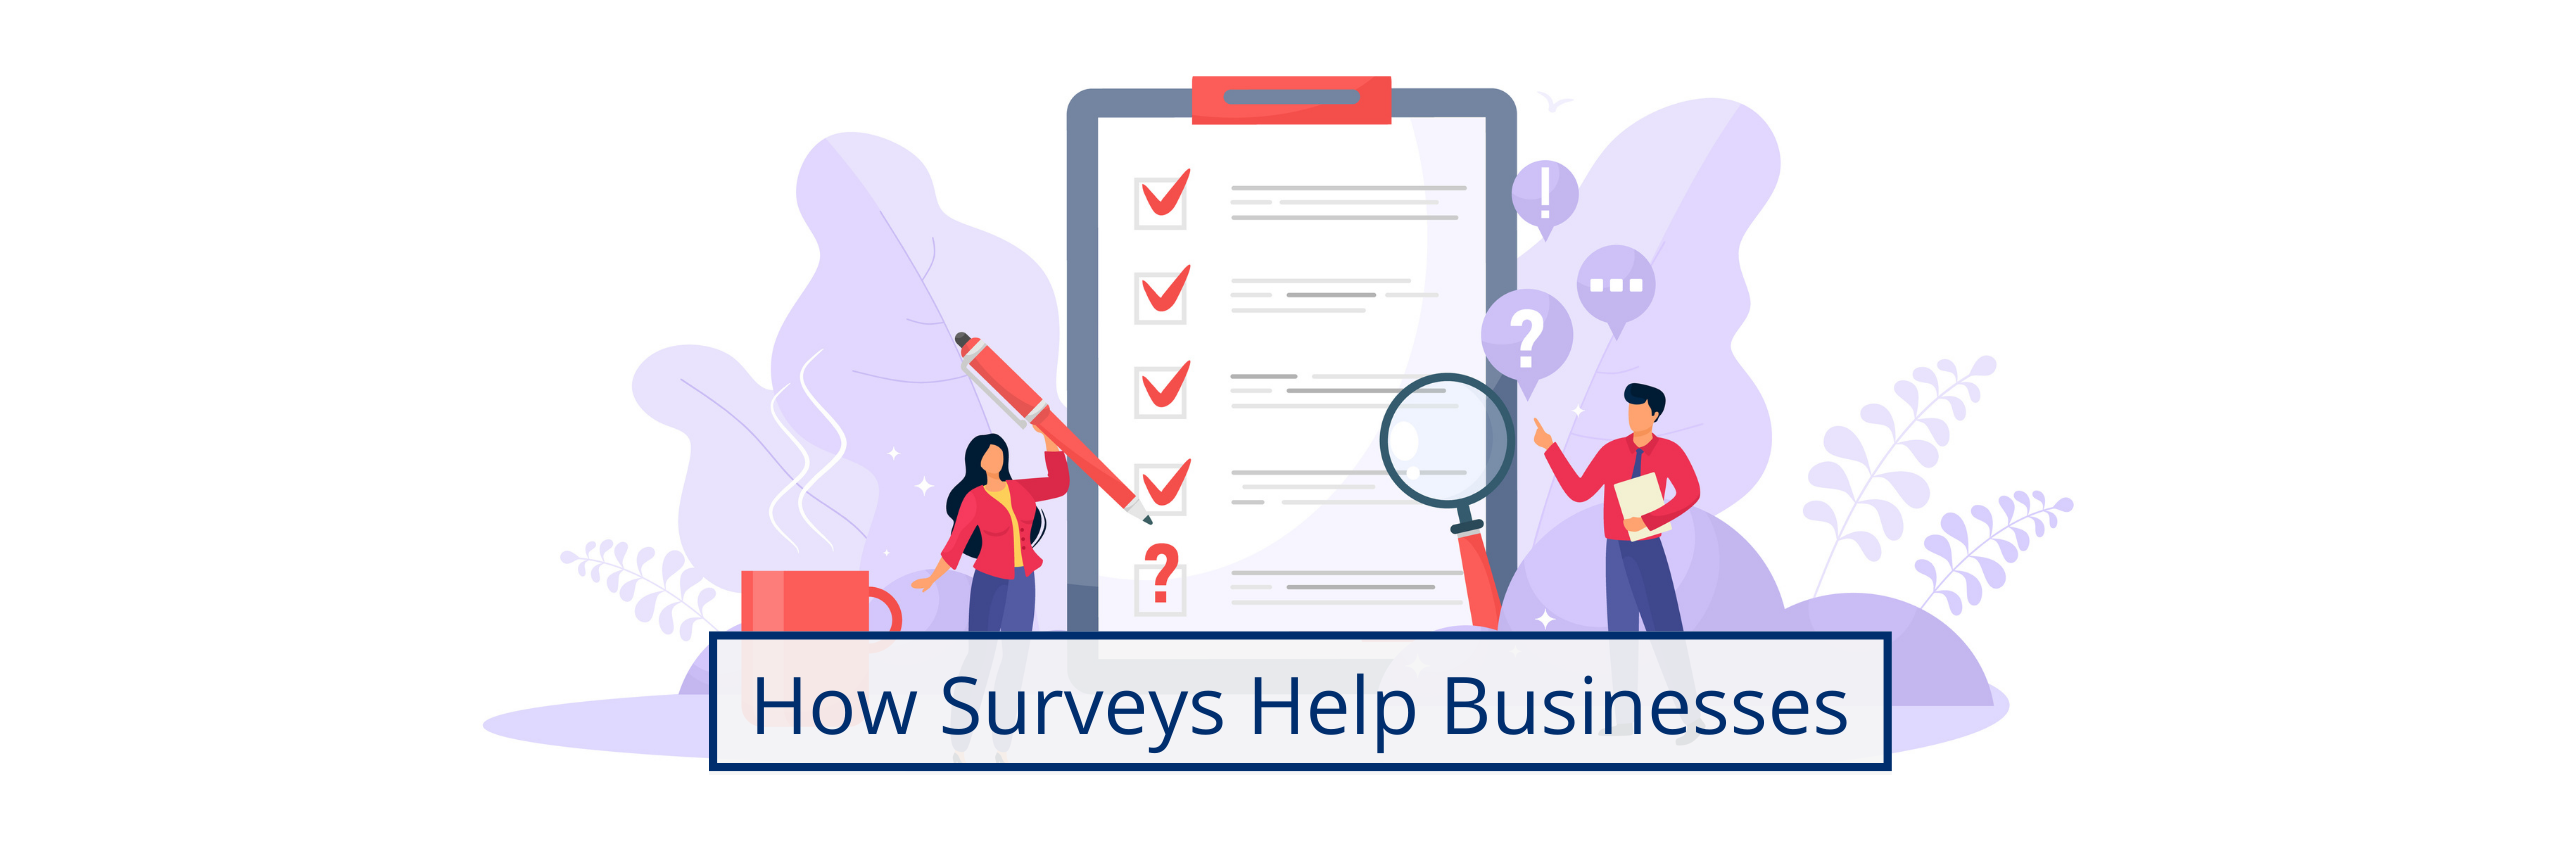 How Surveys Help Businesses